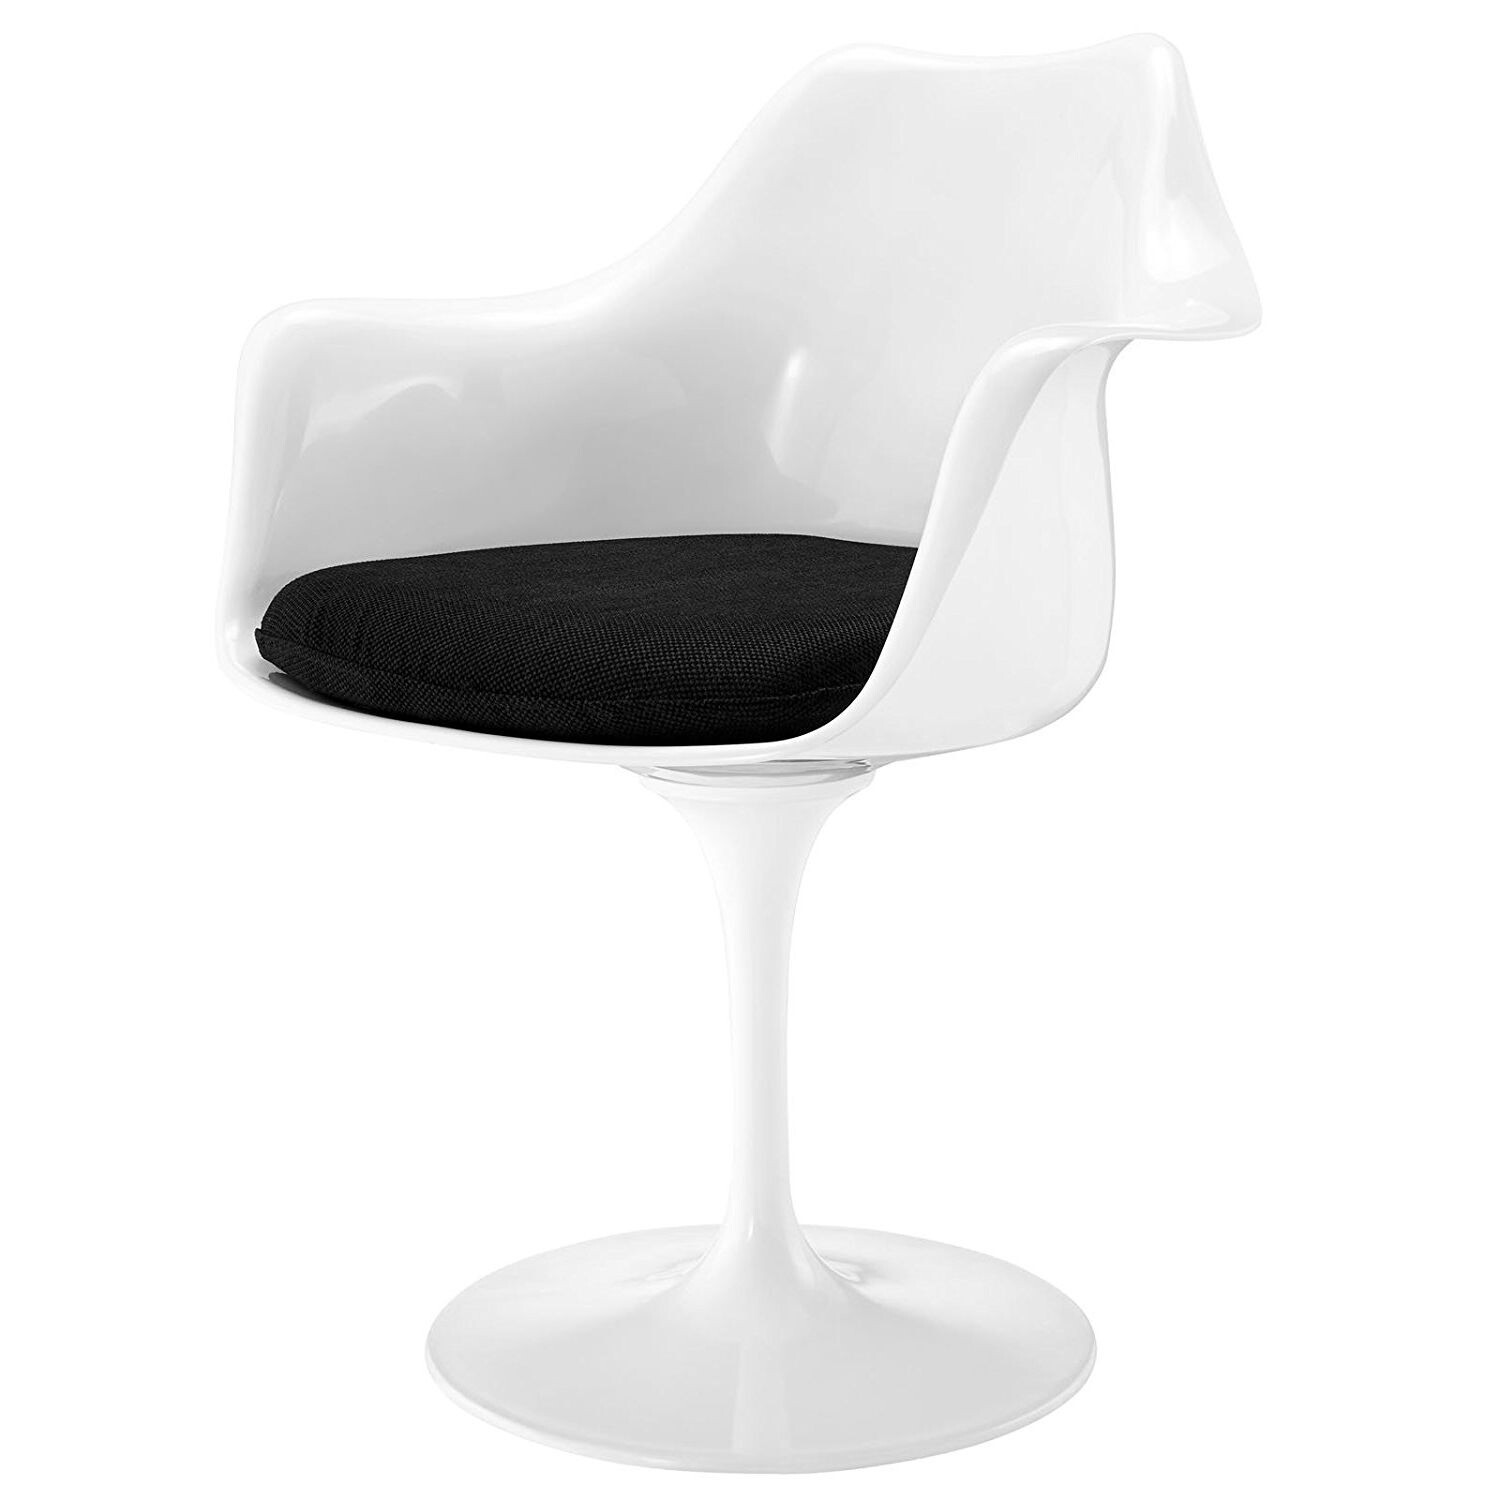 Стул с подлокотниками пластиковый белый с черной подушкой Eero Saarinen Style Tulip Armchair